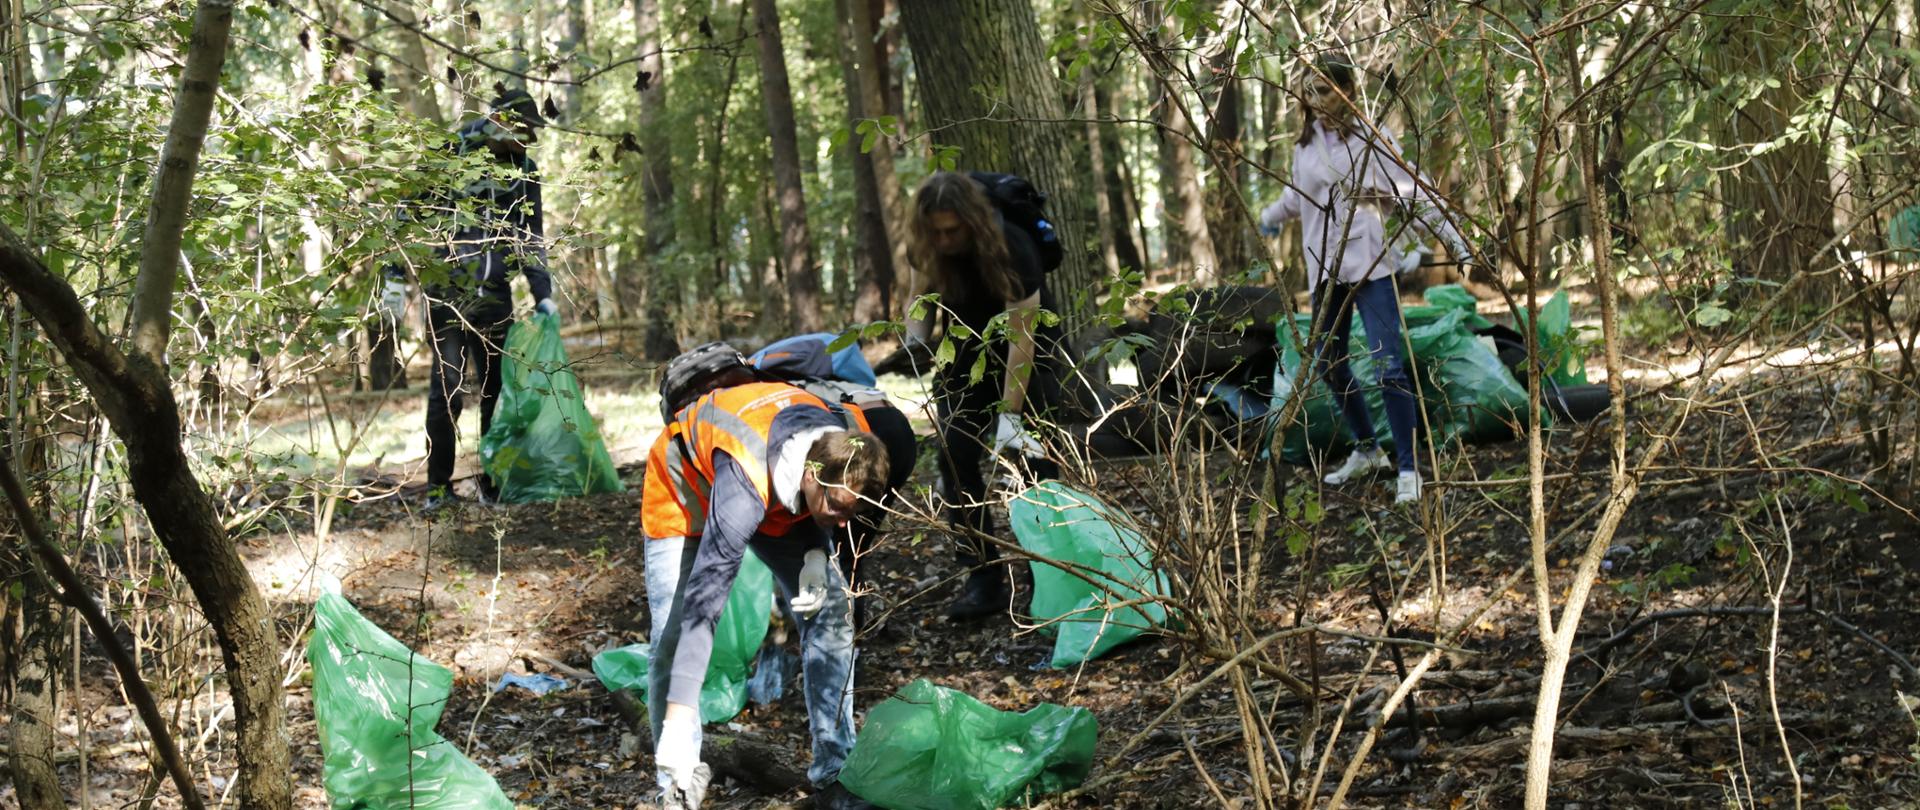 W lesie kilka osób zbiera śmieci. Obok nich leżą worki na śmieci.